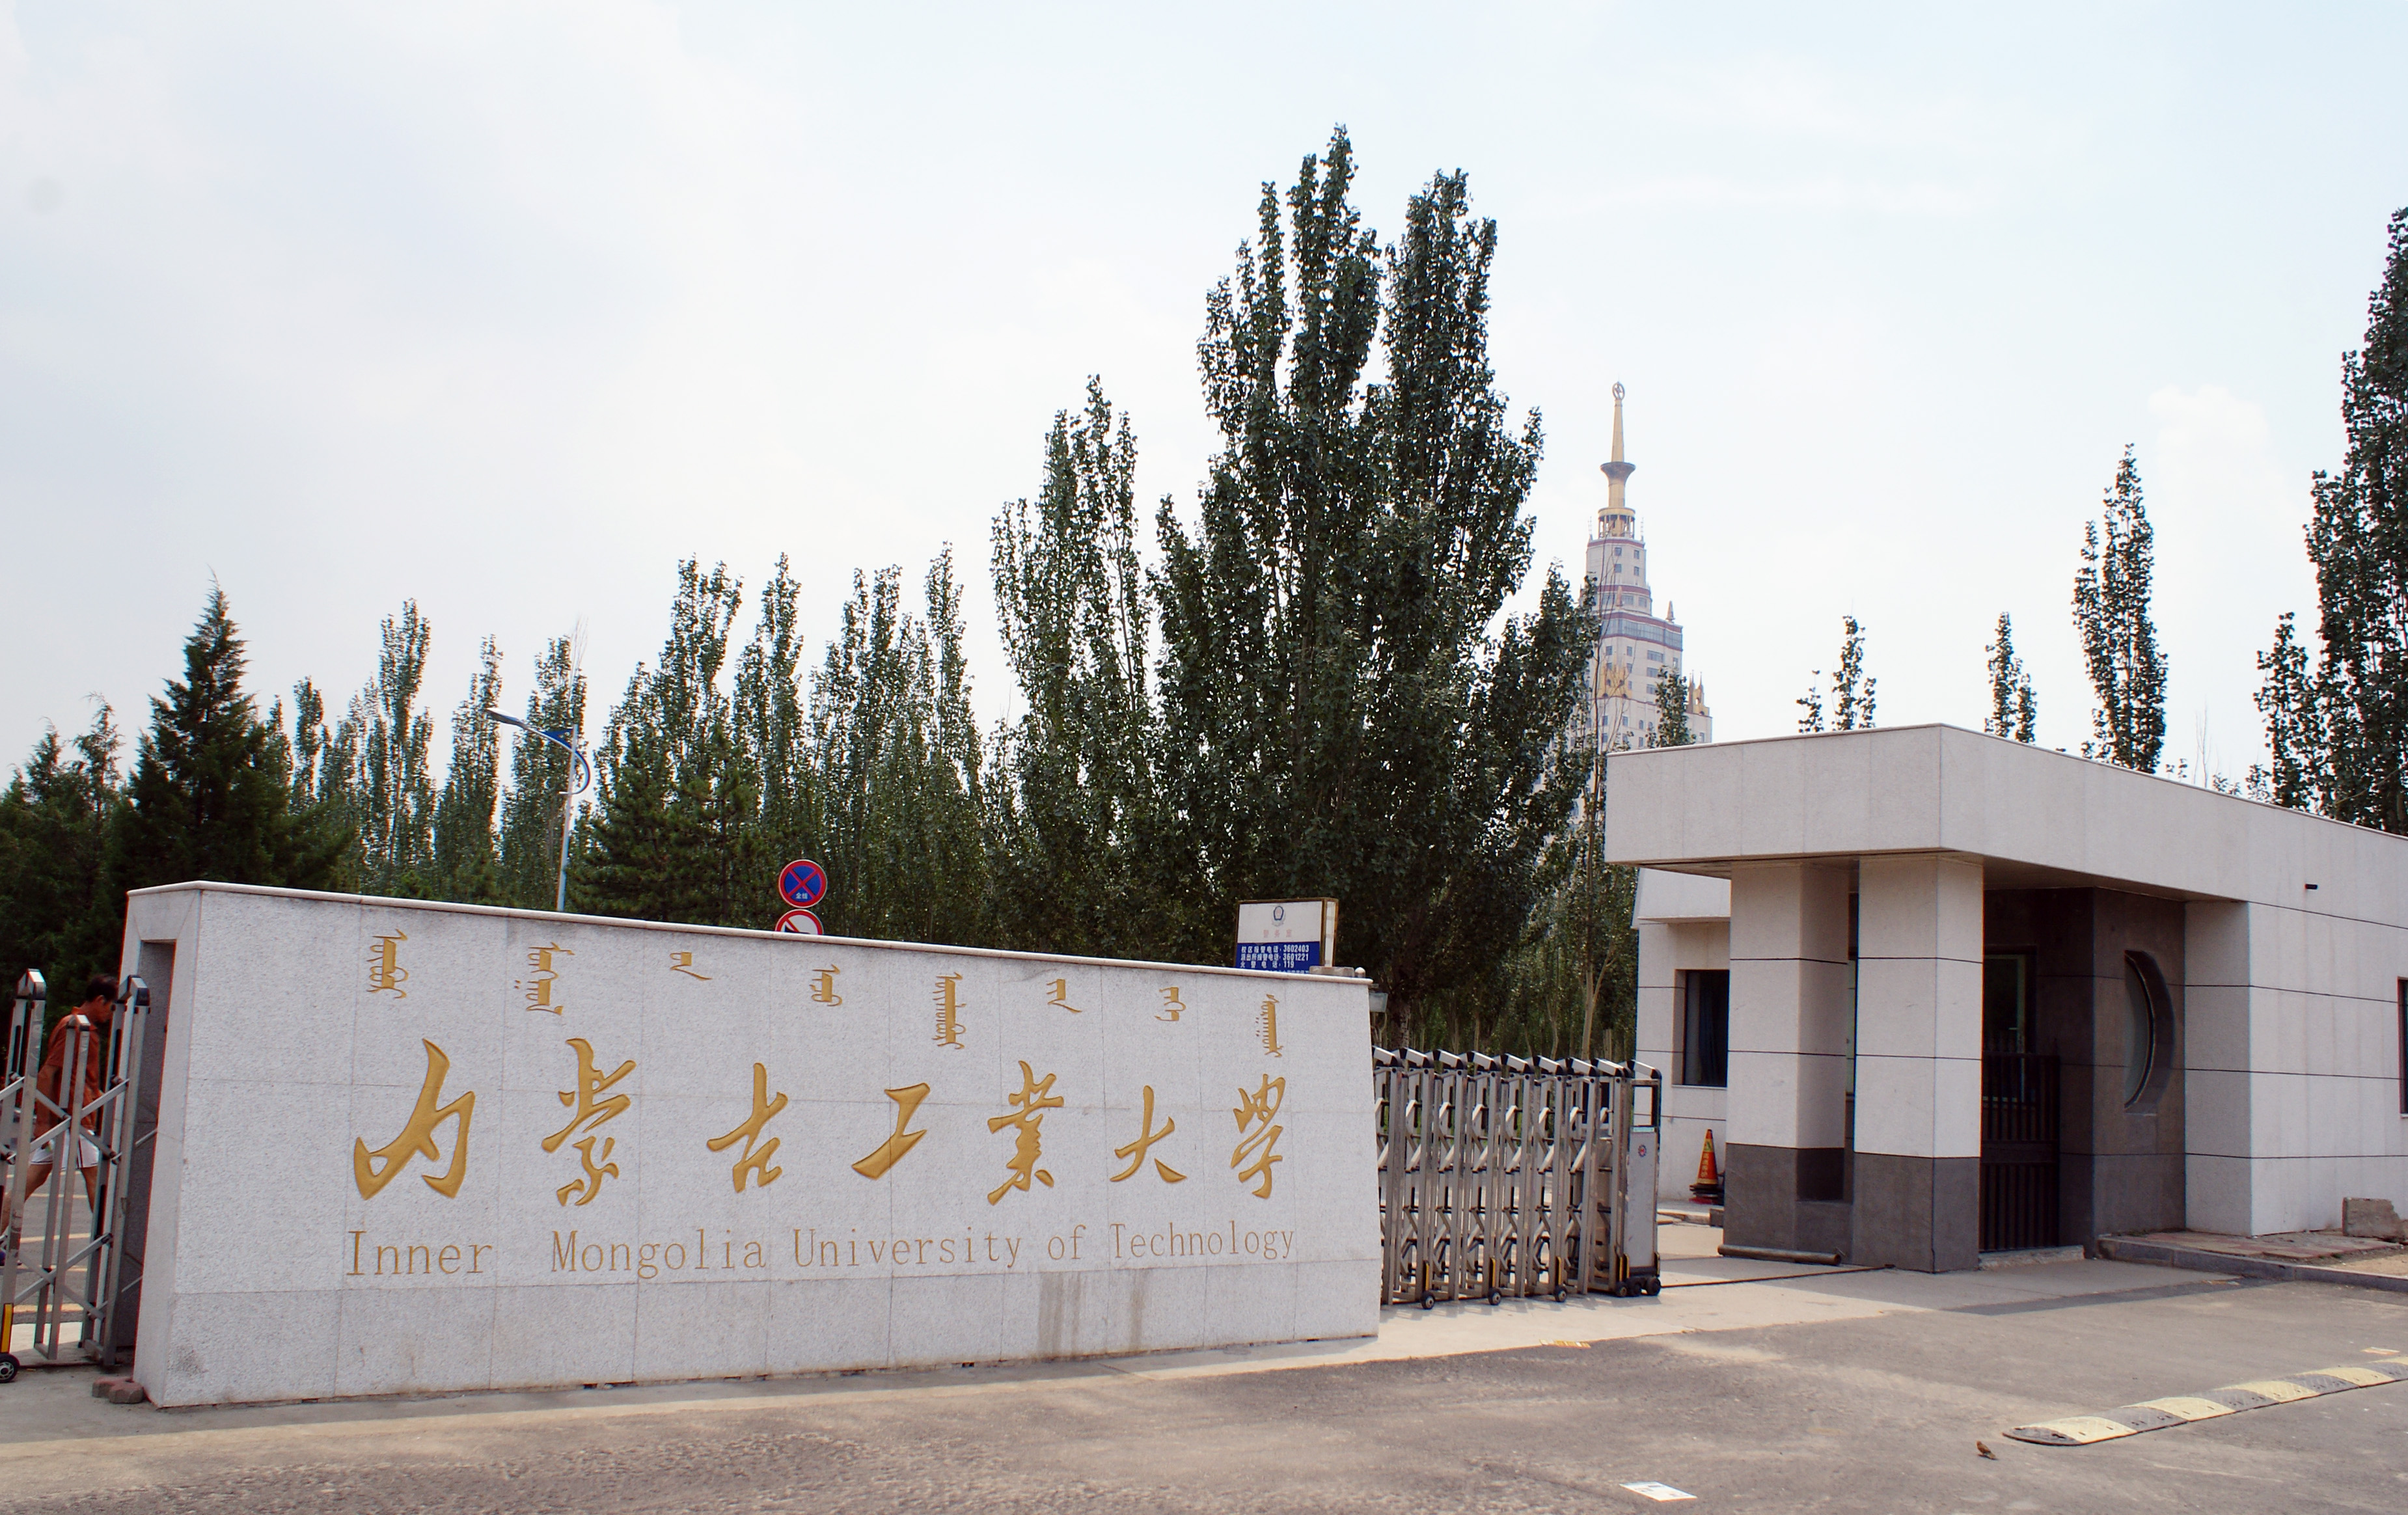 内蒙古工业大学科学楼